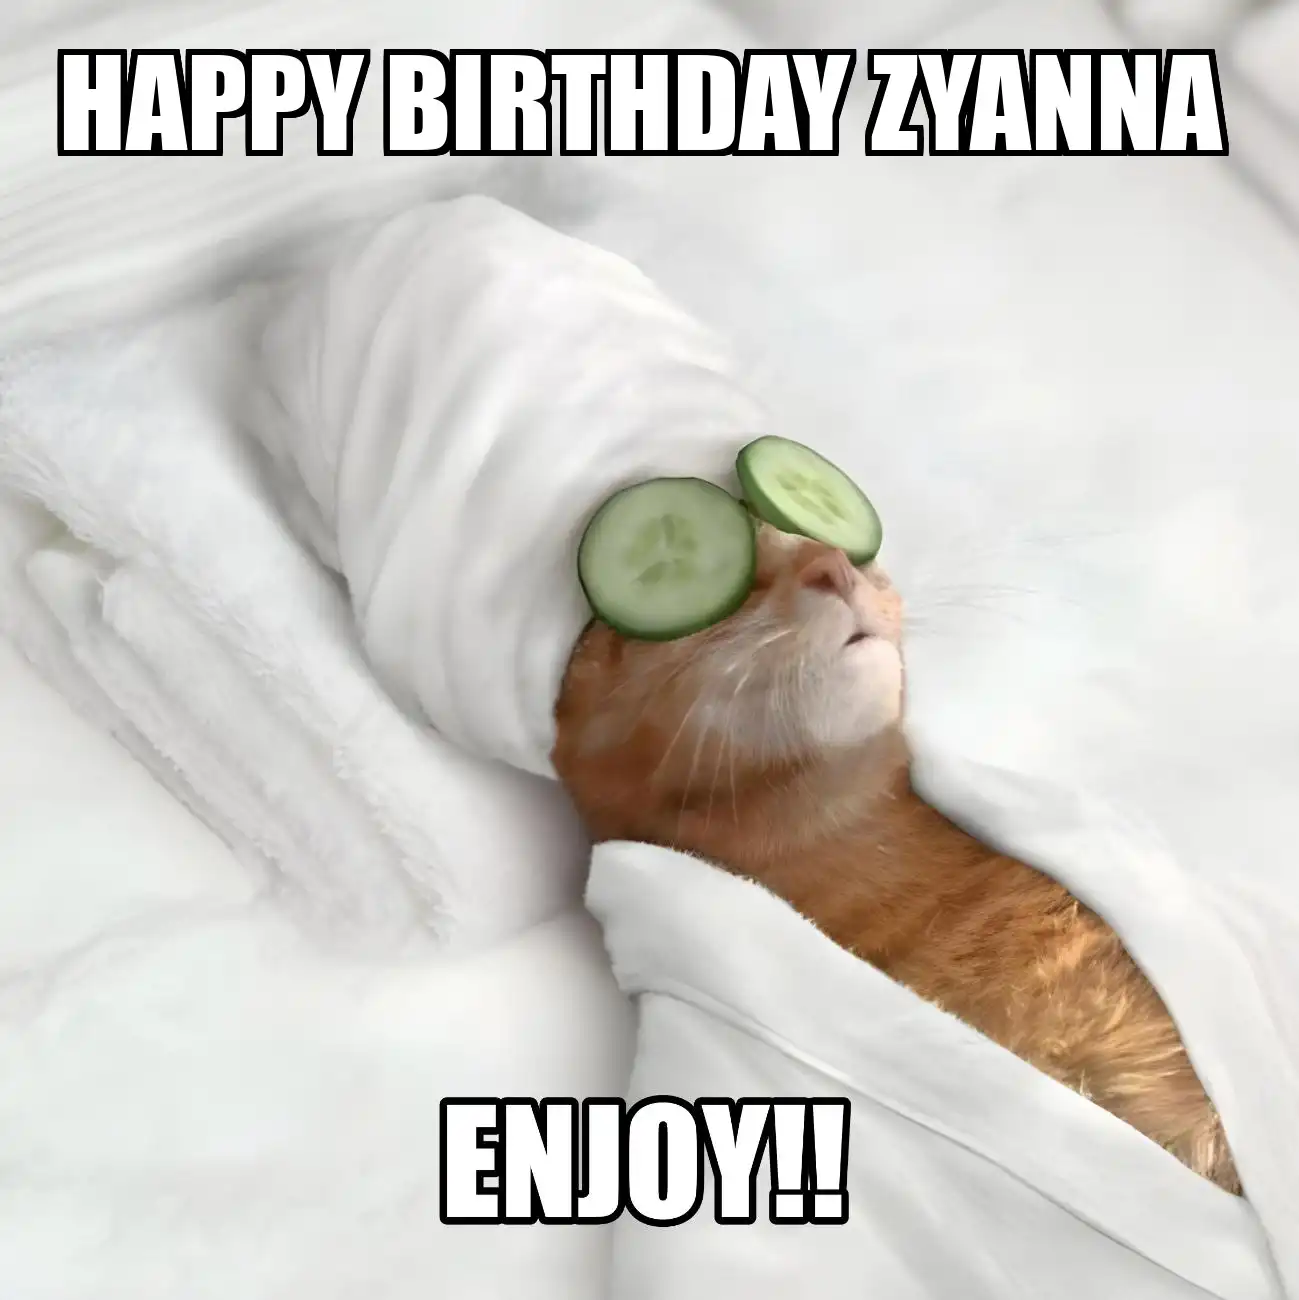 Happy Birthday Zyanna Enjoy Cat Meme